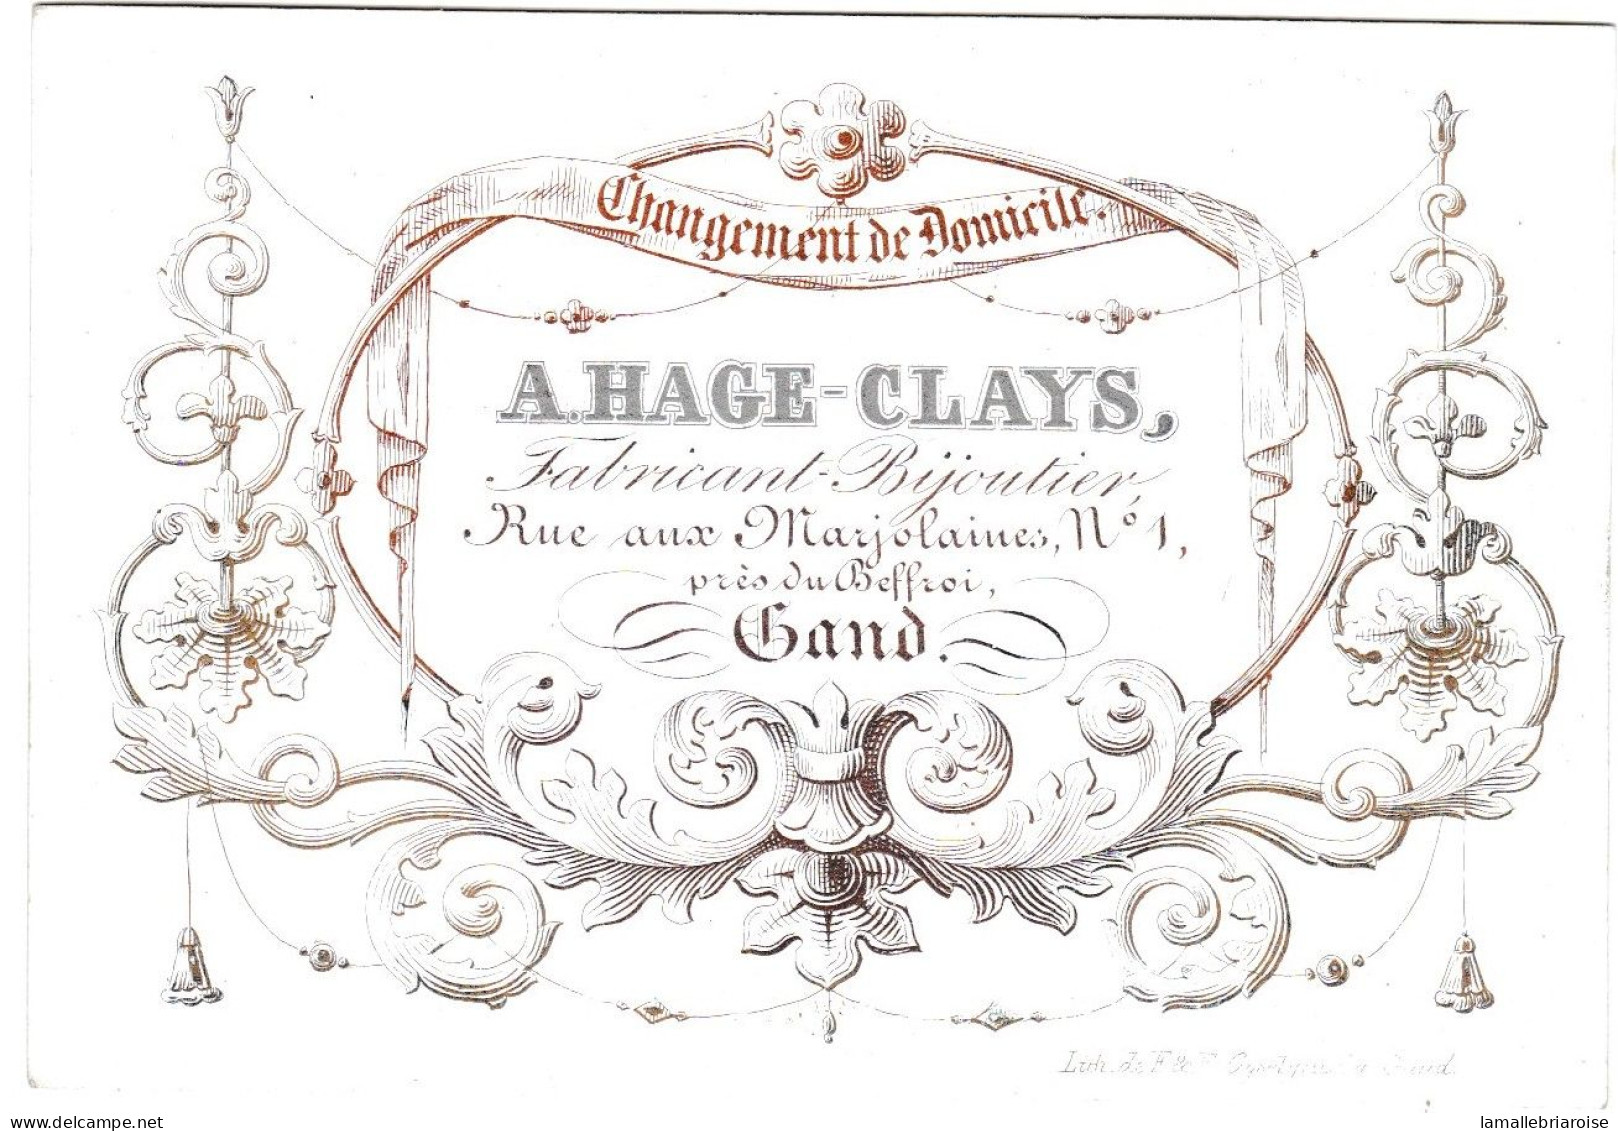 Belgique "Carte Porcelaine" Porseleinkaart, A.Hage - Clays, Bijoutier, Gand, Dim:108x 75mm - Porcelaine